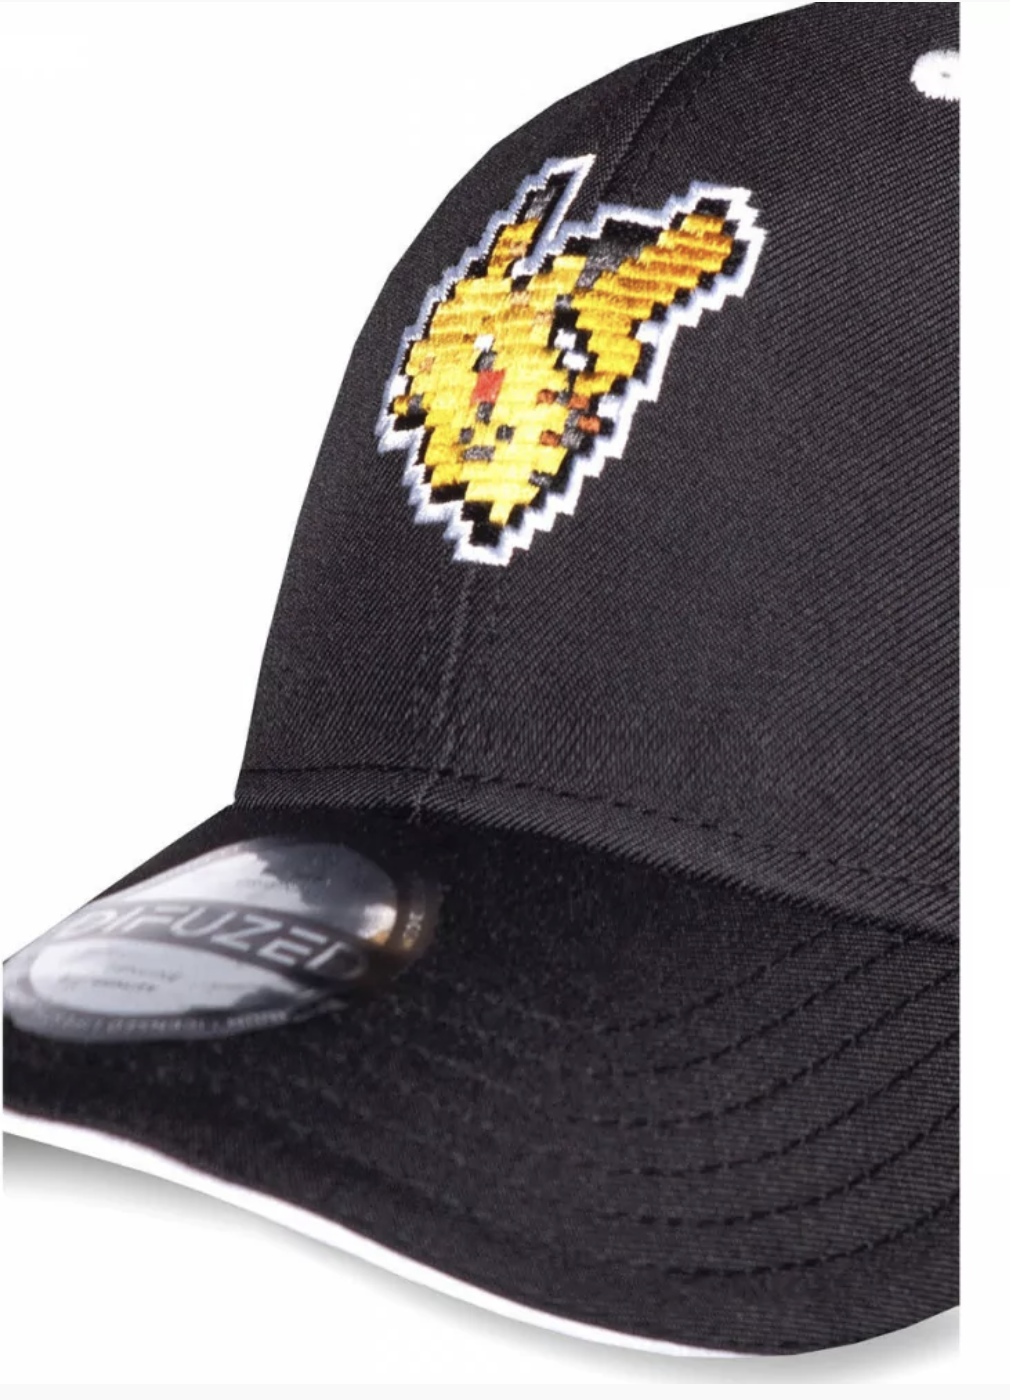 Pokémon - Pikachu : Casquette Stripes - le palais des goodies